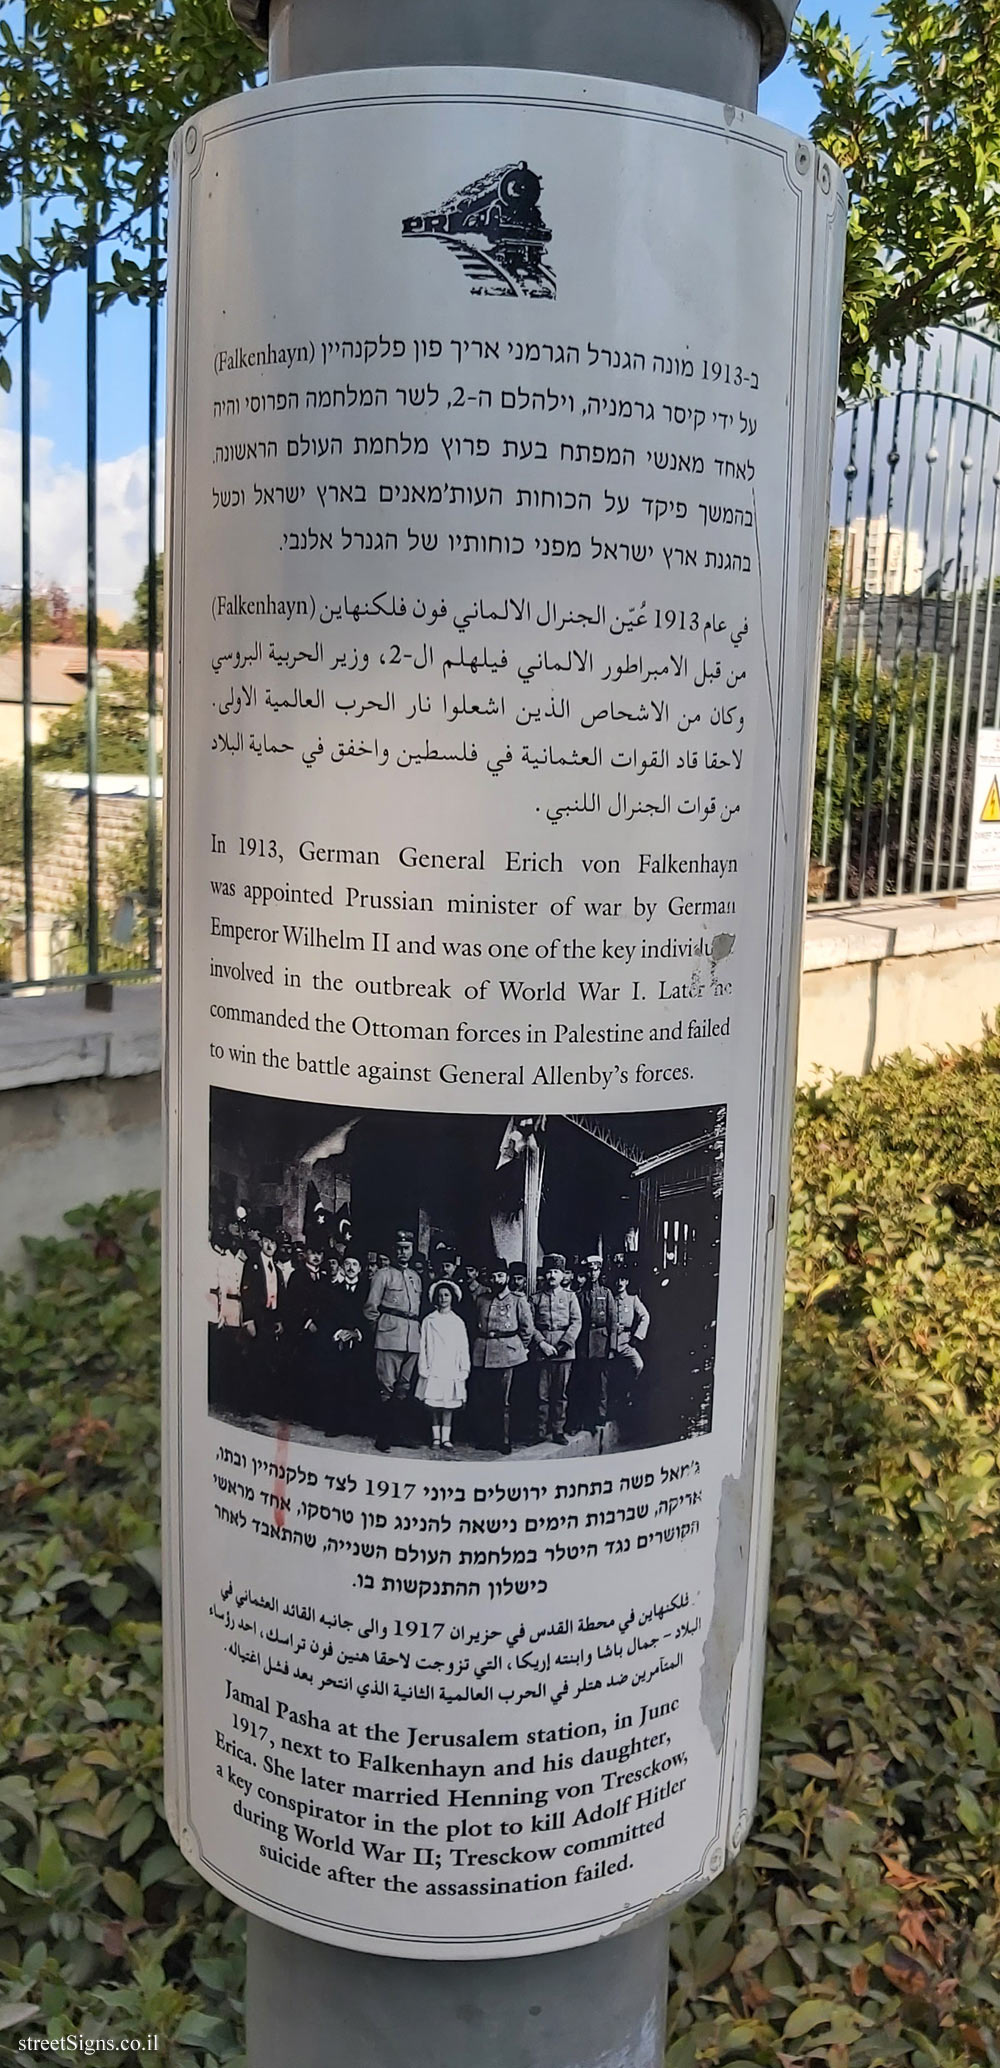 Jerusalem - HaMesila Park - 1914 - World War I (8) - Side 2 - HaMesila Park, Jerusalem, Israel